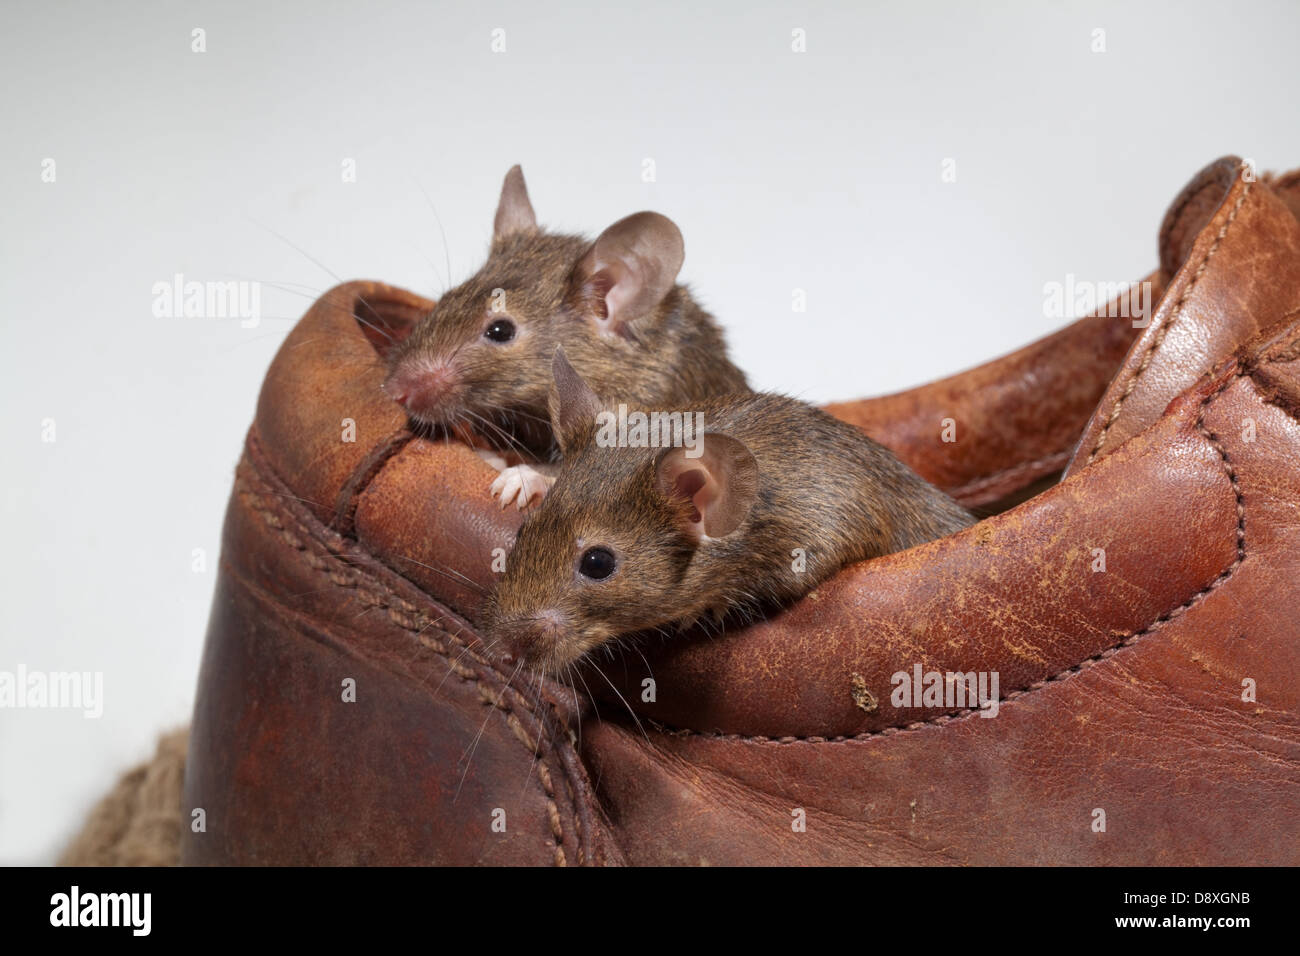 Les souris communes (Mus musculus). Sortant d'une vieille chaussure en cuir. Banque D'Images